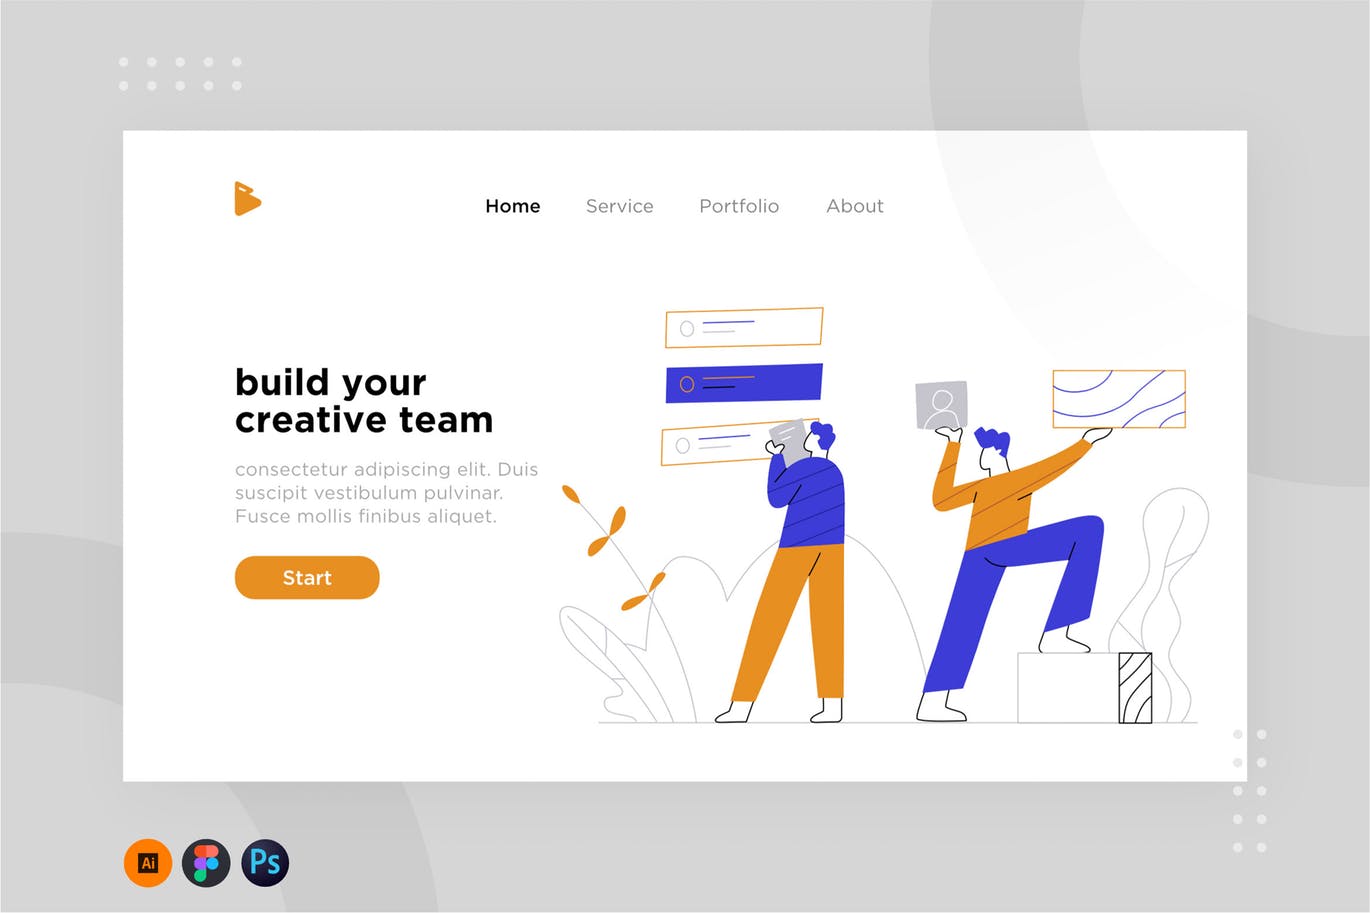 团队协作网站设计概念插画设计素材 Team work illustration for website 1.2插图